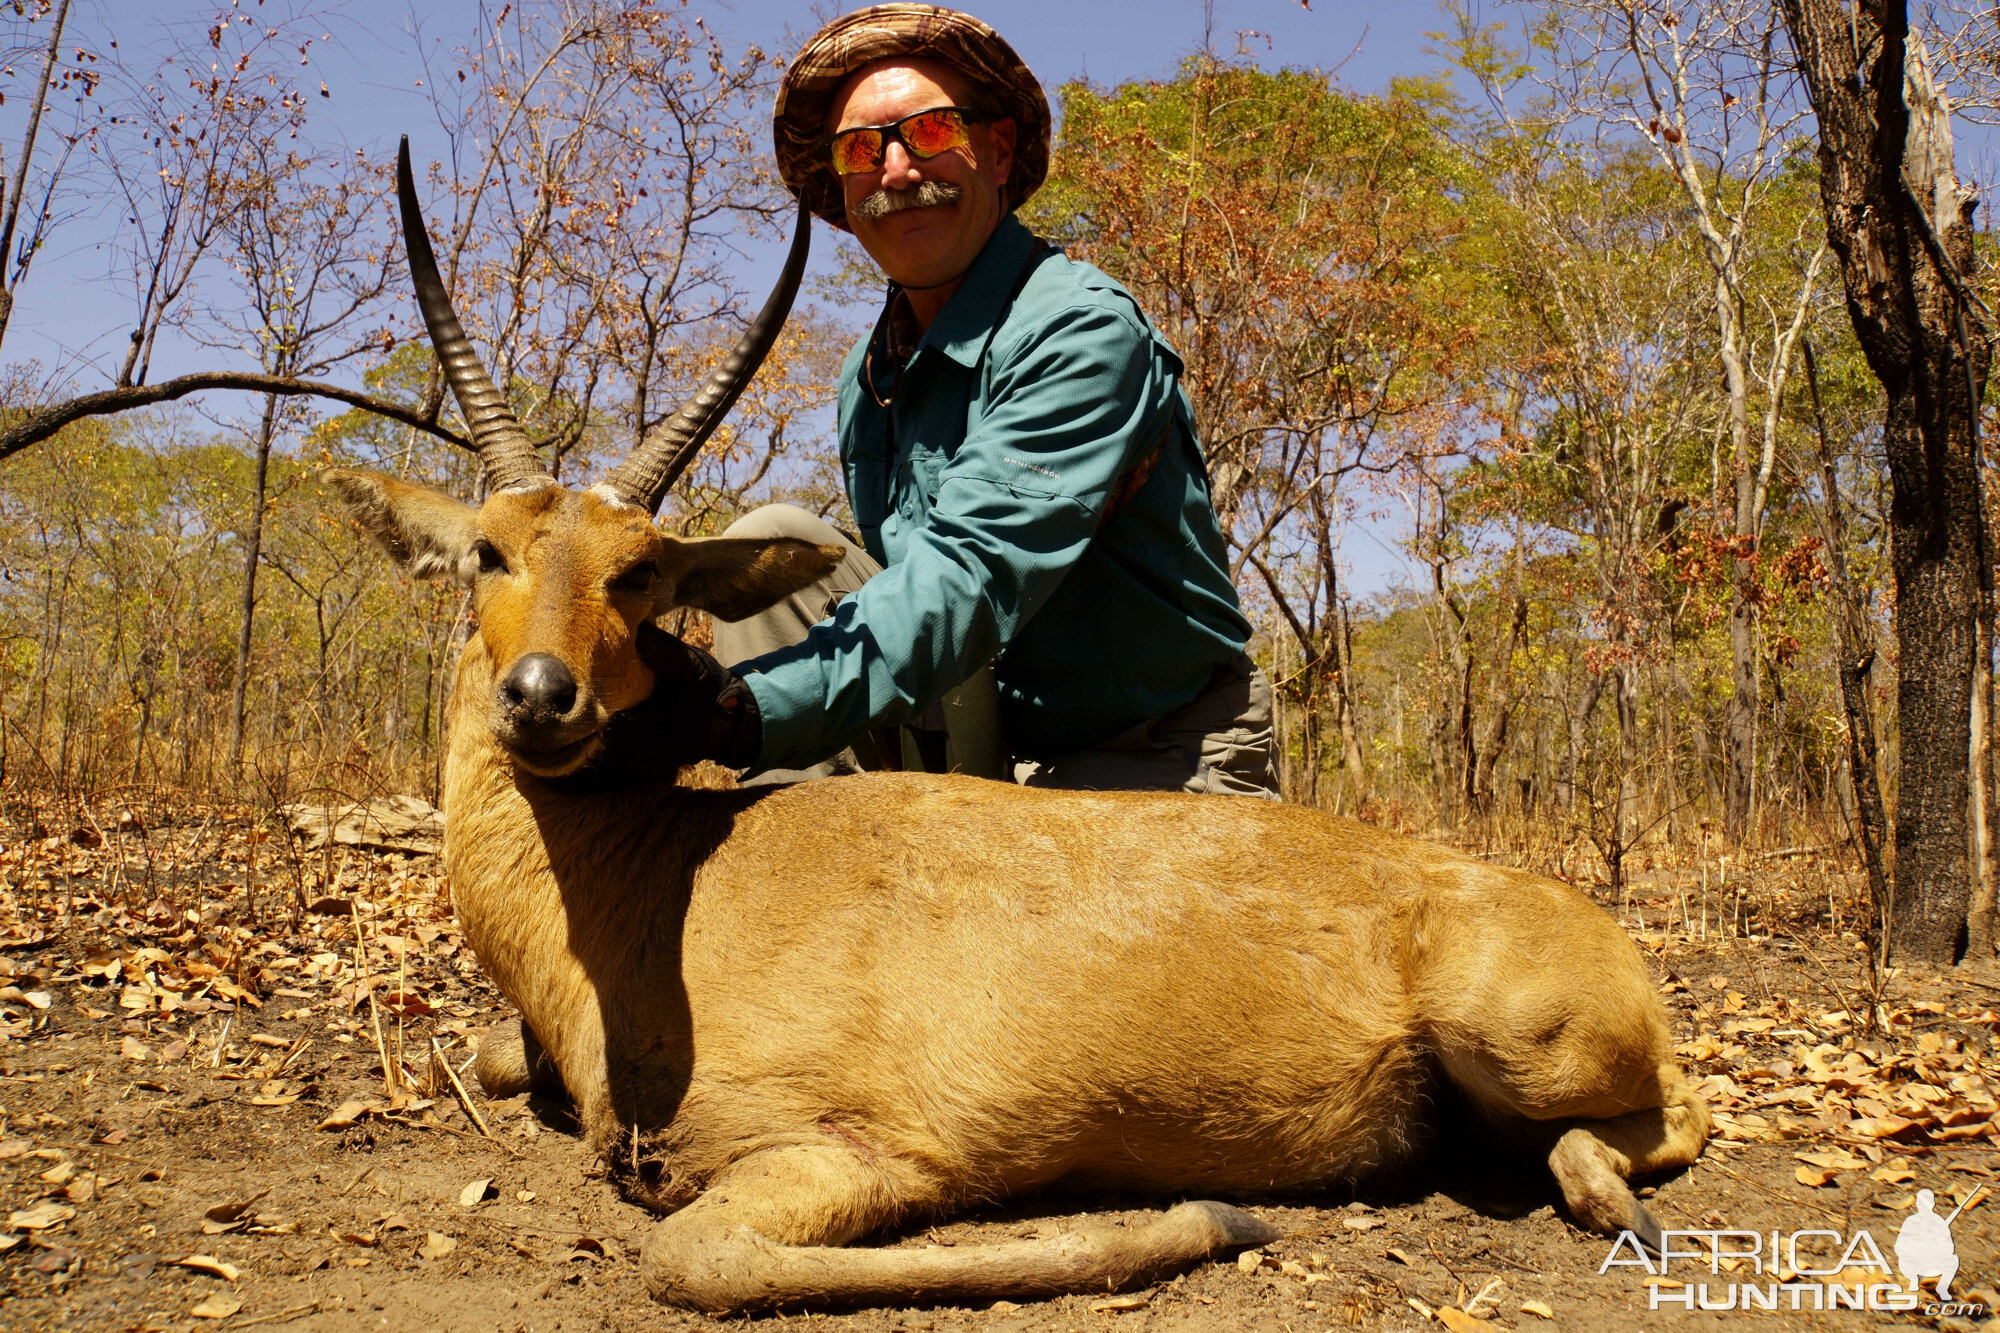 Hunting 12 ½" Inch Reedbuck in Tanzania